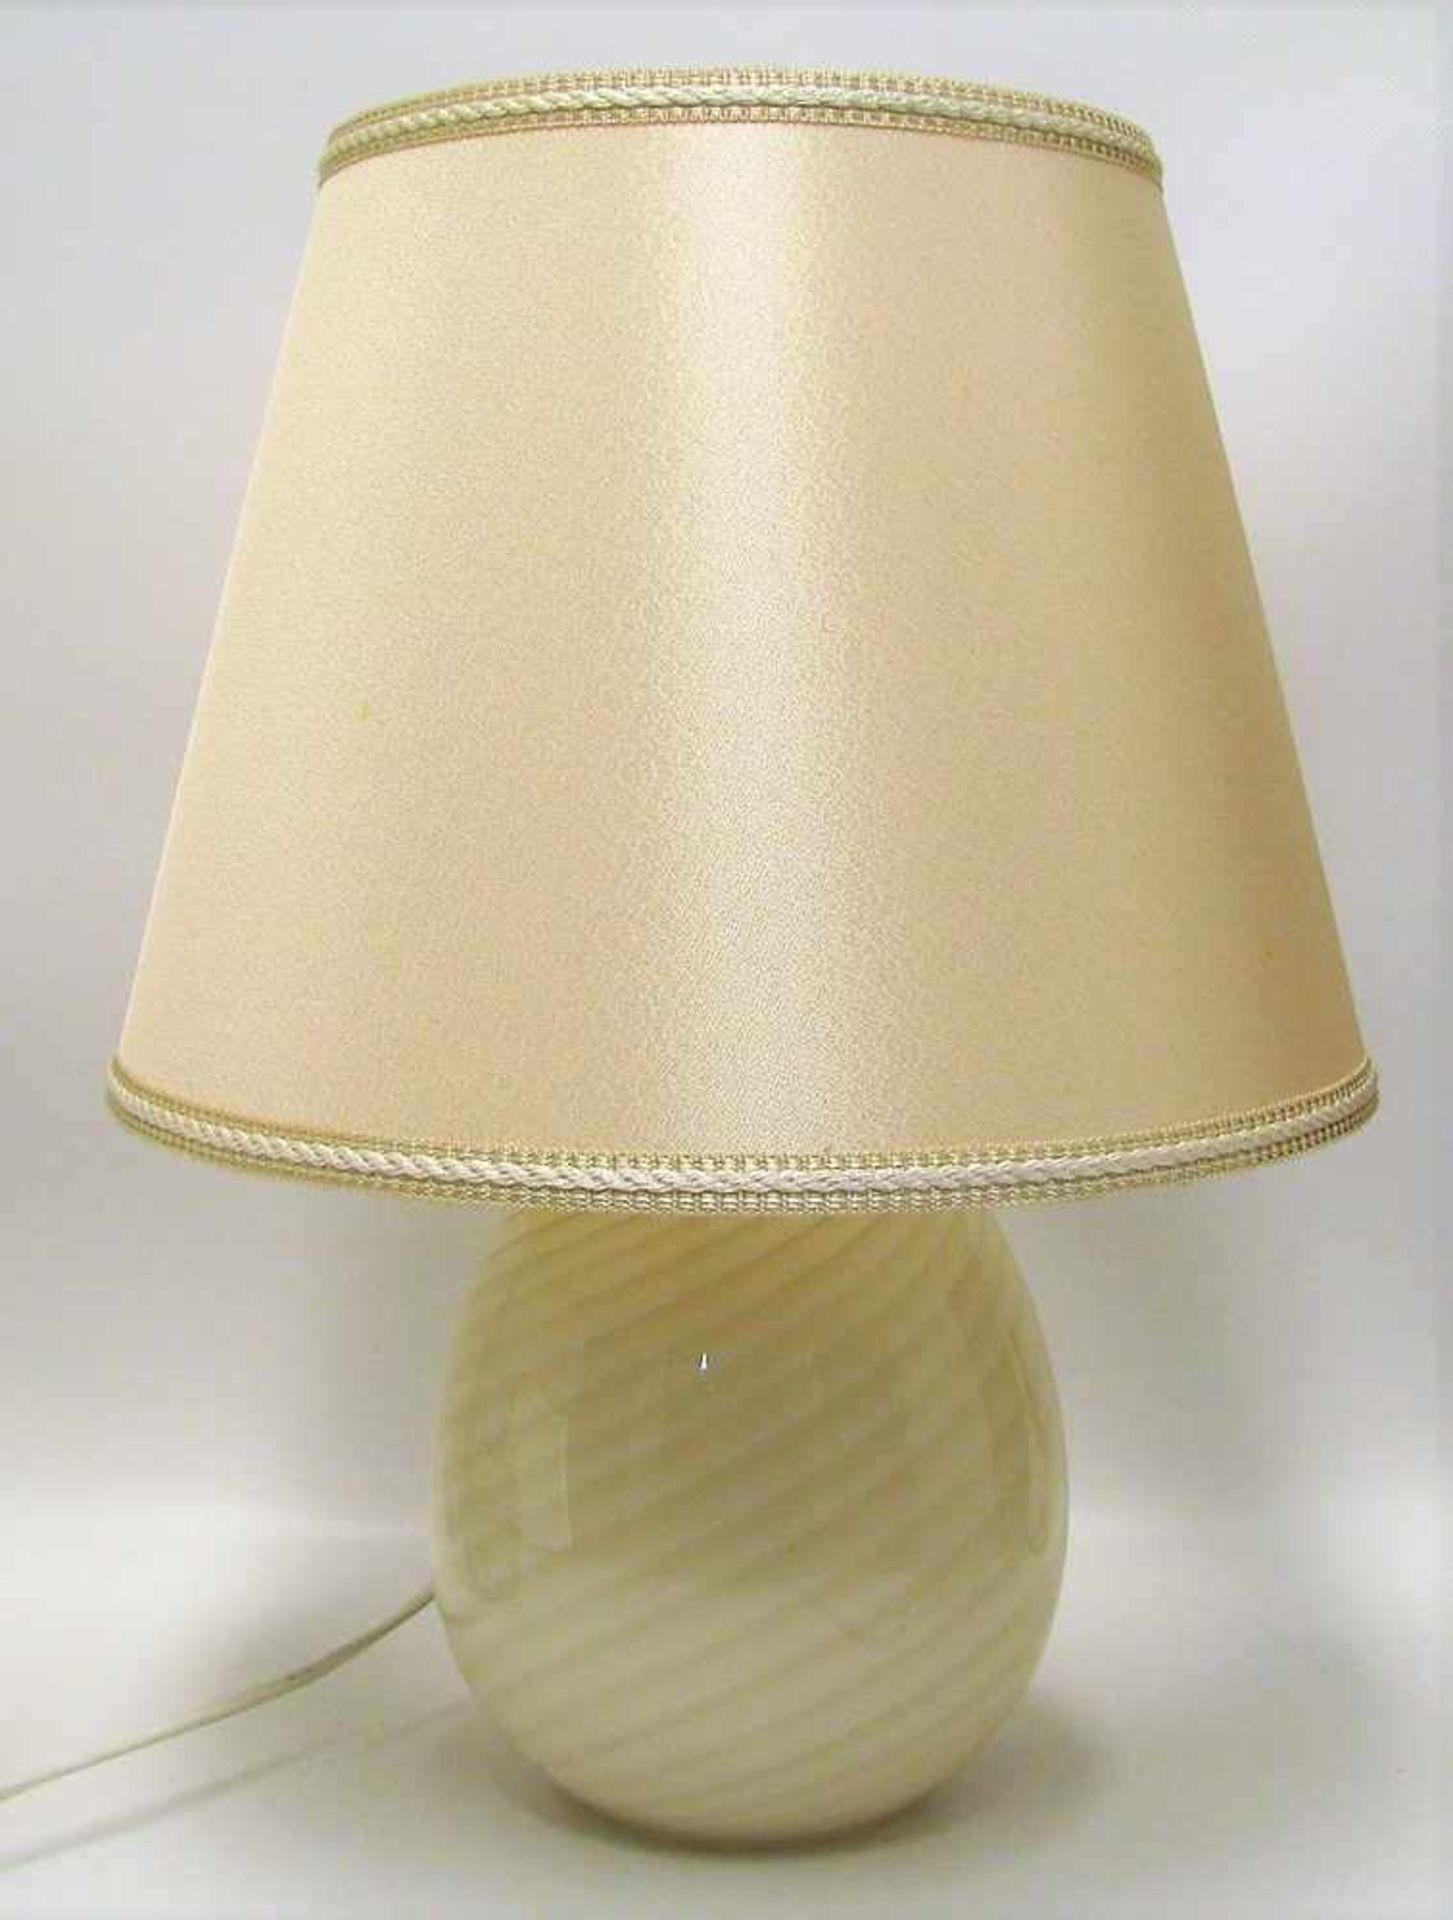 Tischlampe, Zicoli, 1960/70er Jahre, Glas mit beige-goldenen Fädeneinschmelzungen, gem., h 28 cm,